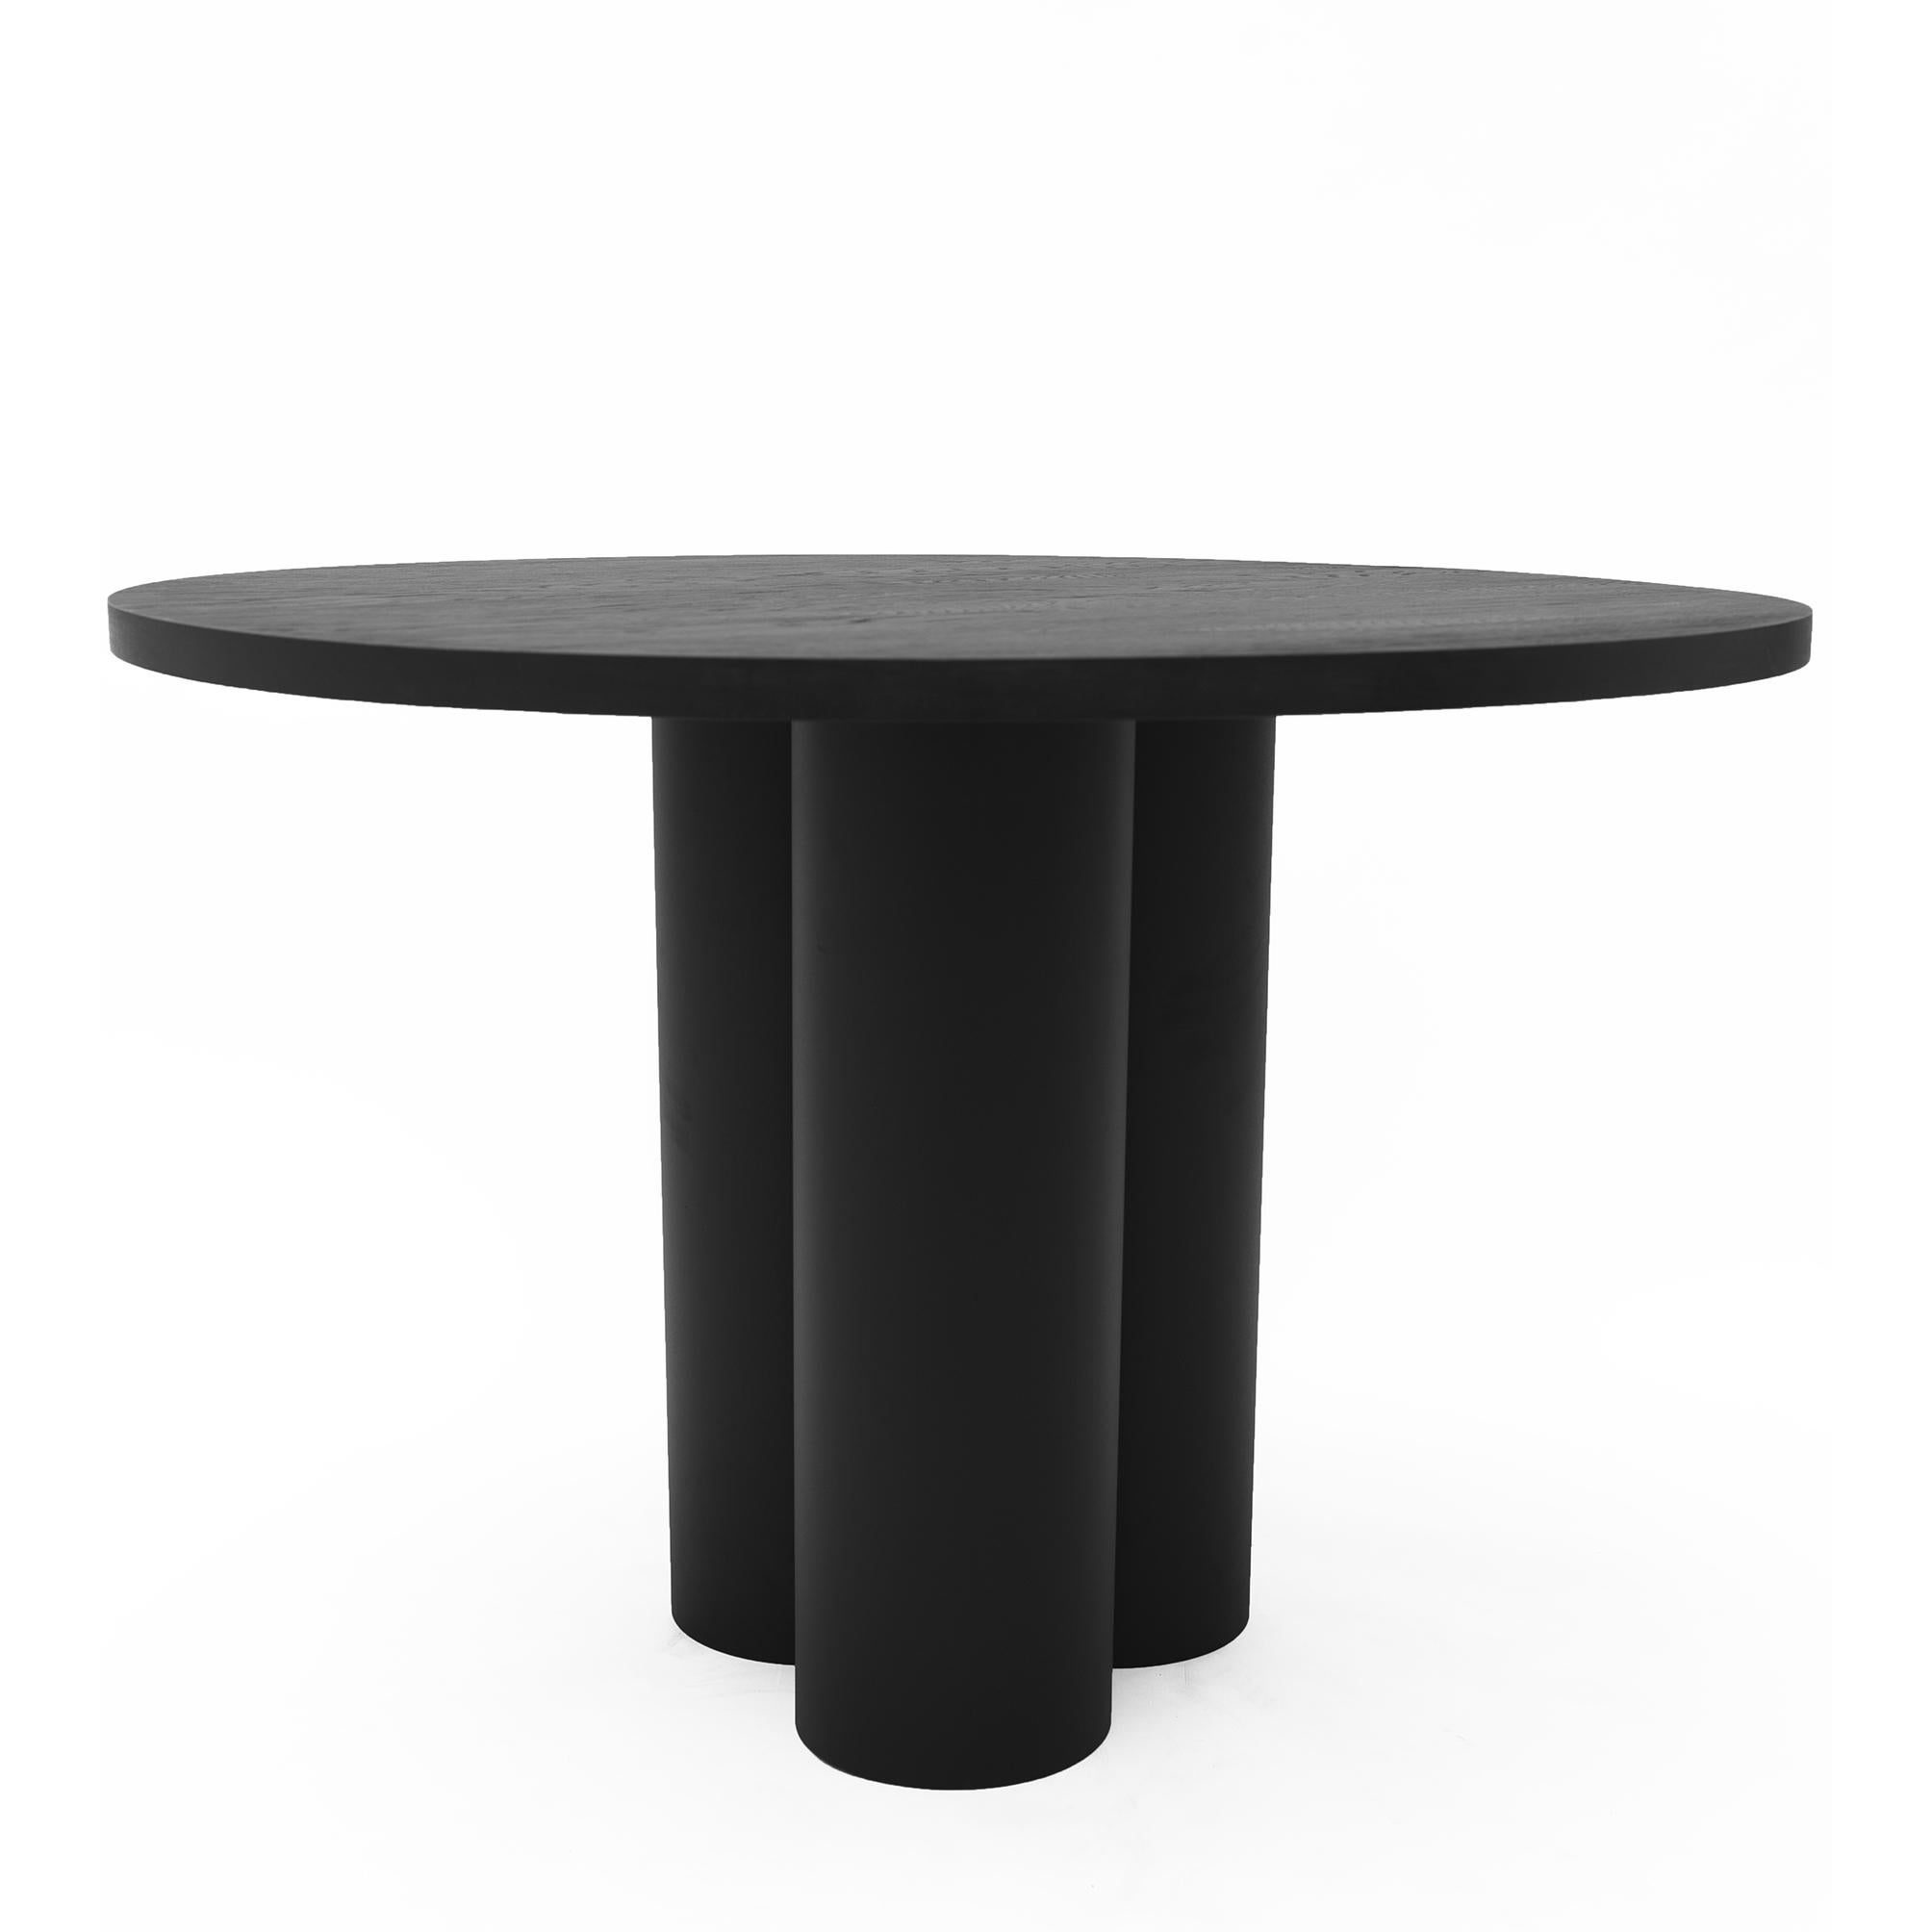 Object 035 table ronde en chêne par NG Design
Dimensions : D130 x L130 x H70 cm
Matériaux : Acier revêtu par poudre, Chêne massif

Également disponible : Tous les objets sont disponibles en différents matériaux et couleurs sur demande.

Table ronde